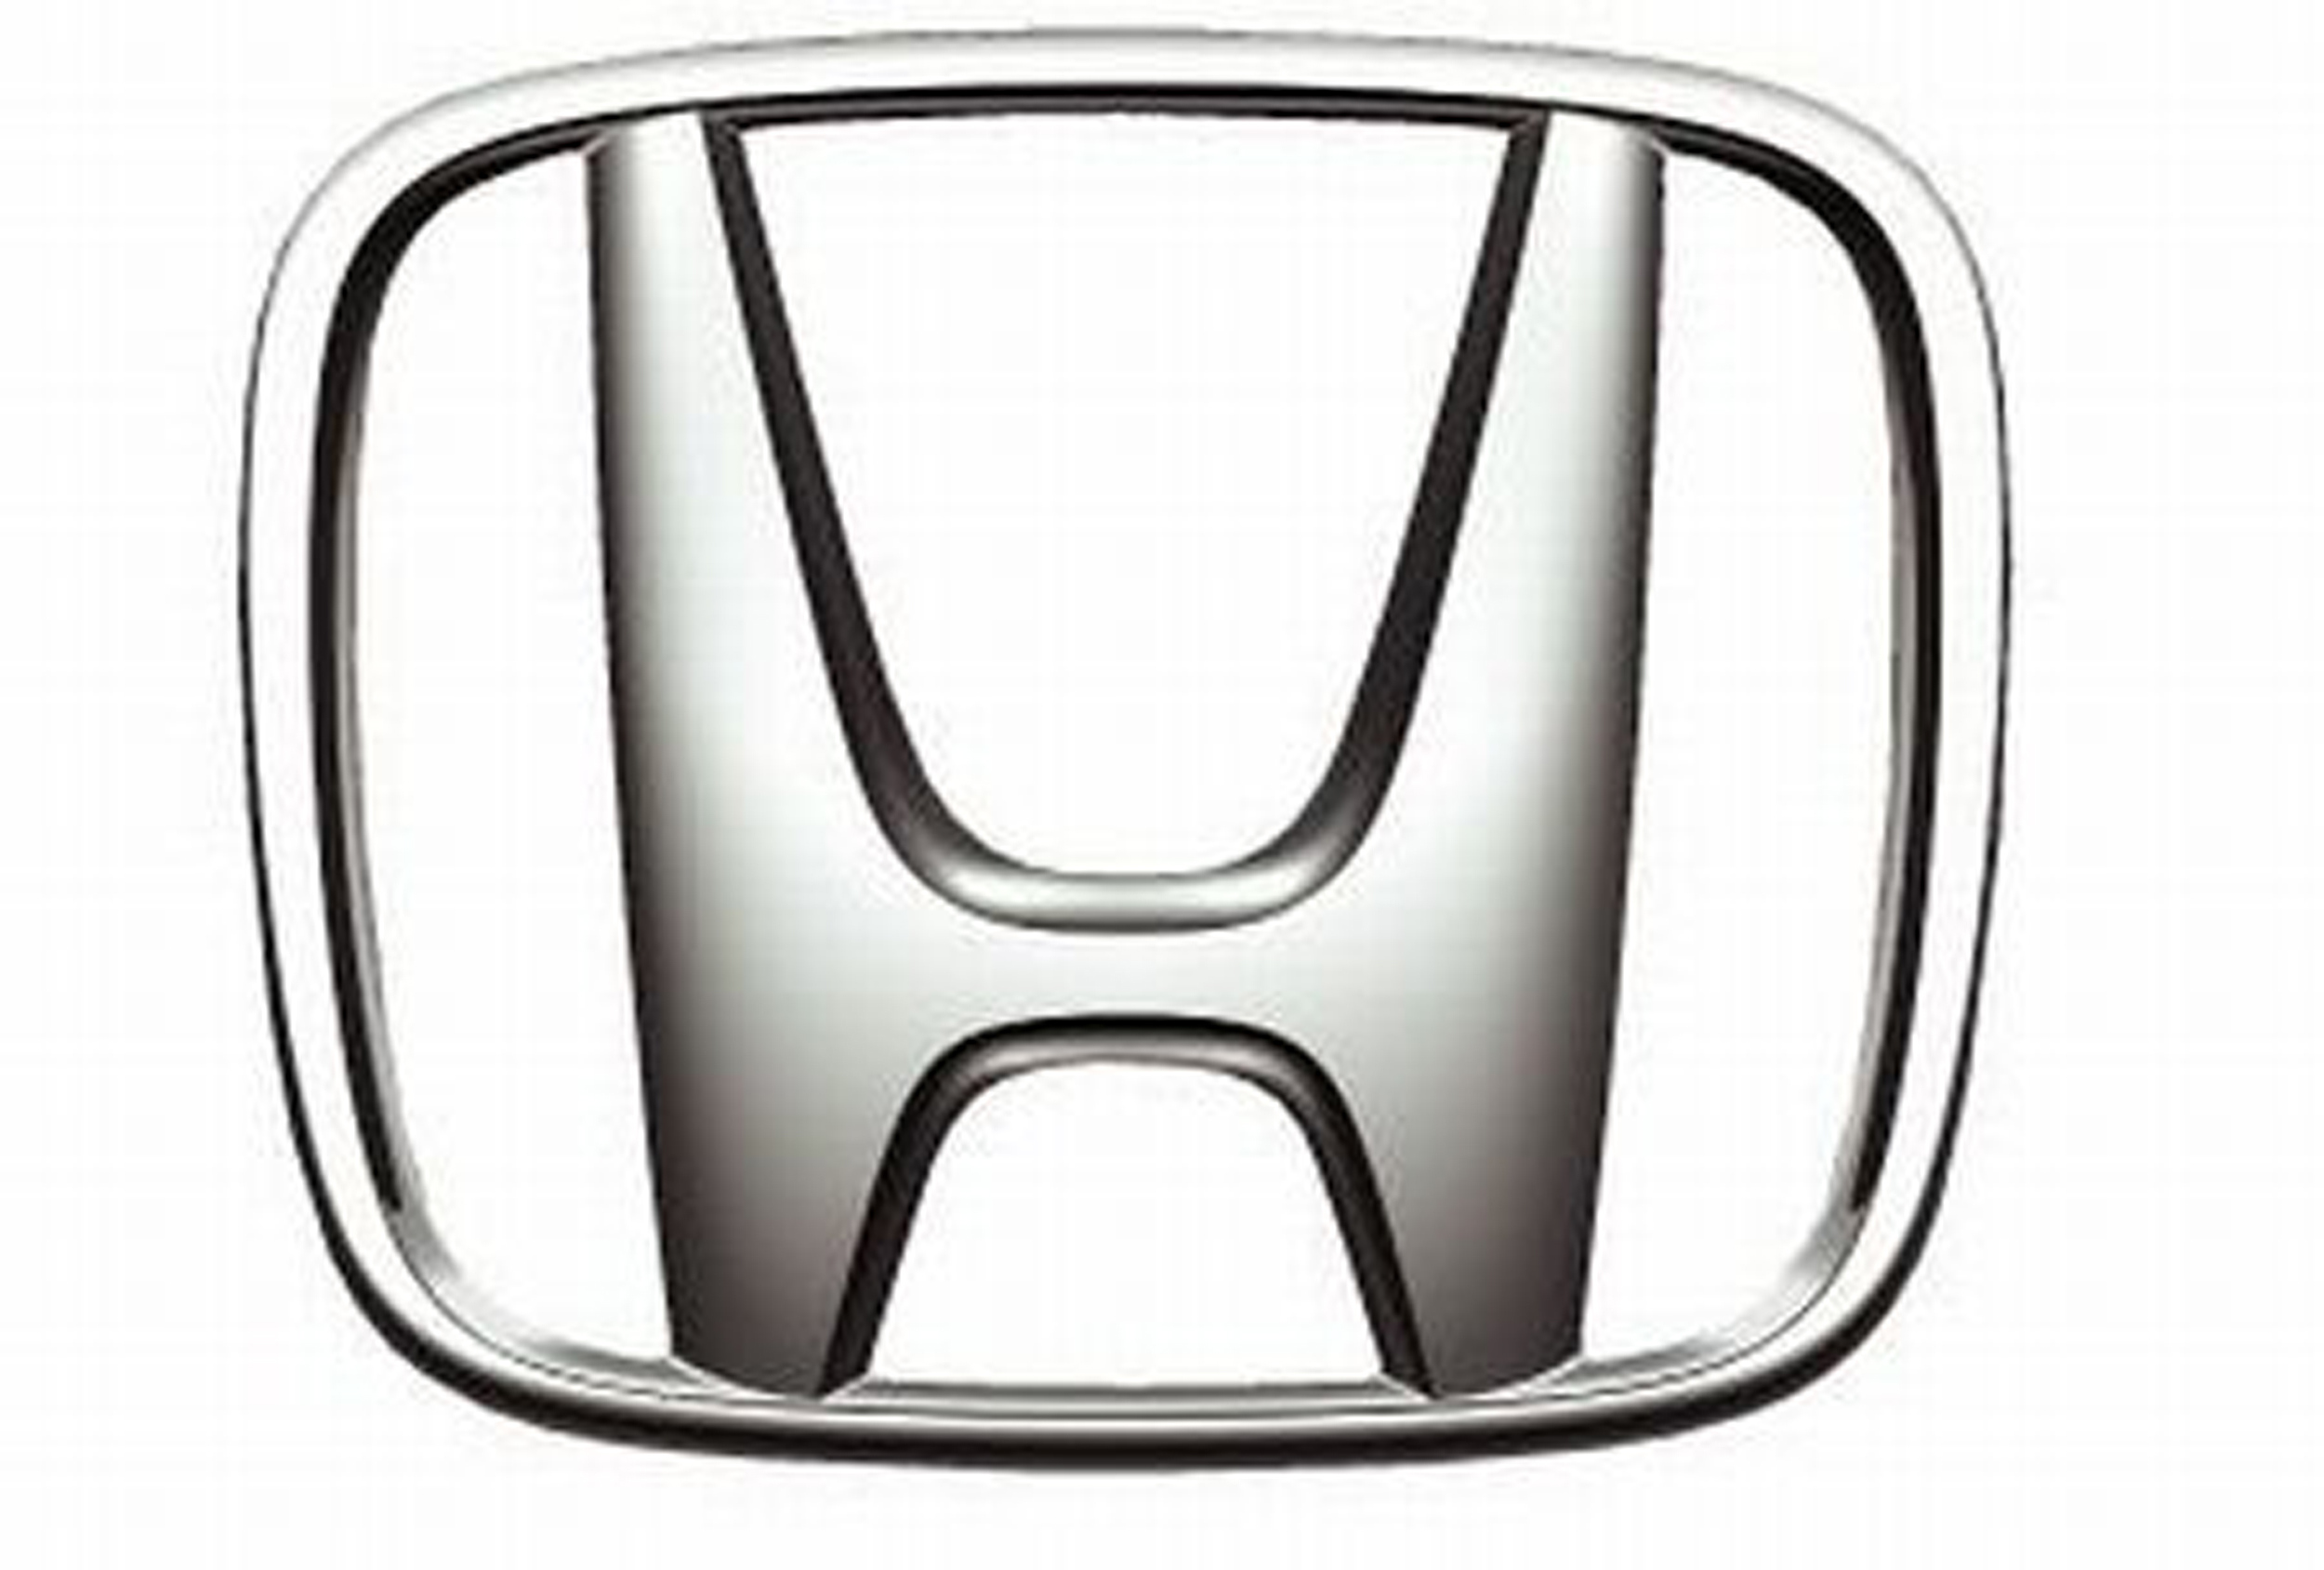 Honda logo 1.3 review #4